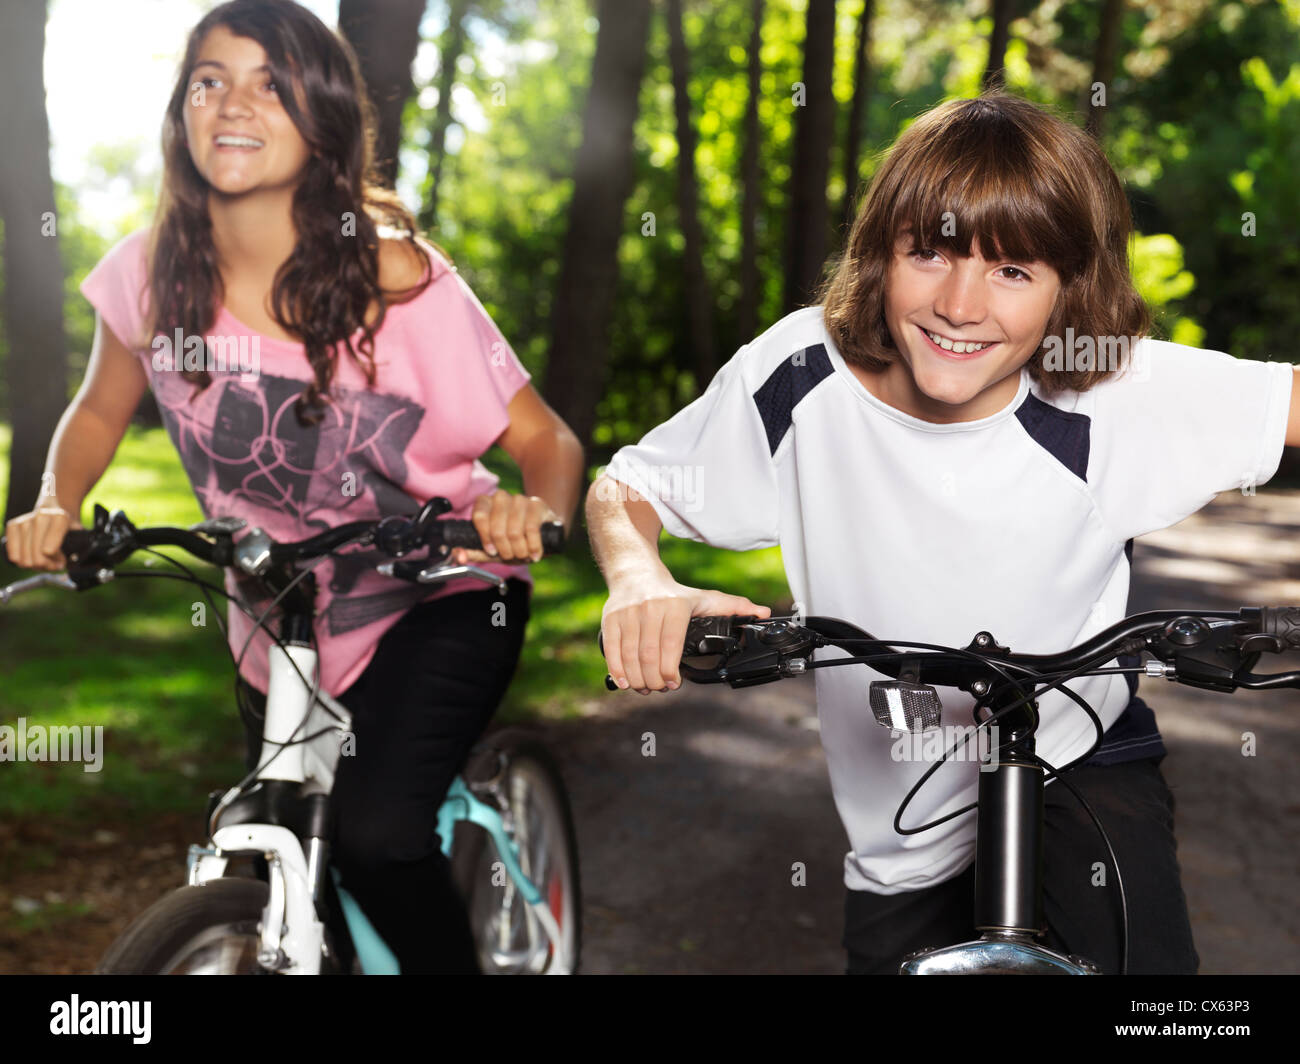 Deux happy smiling children la bicyclette dans un parc, frère et sœur, 10 et 13. Style de vie en plein air actif. Banque D'Images